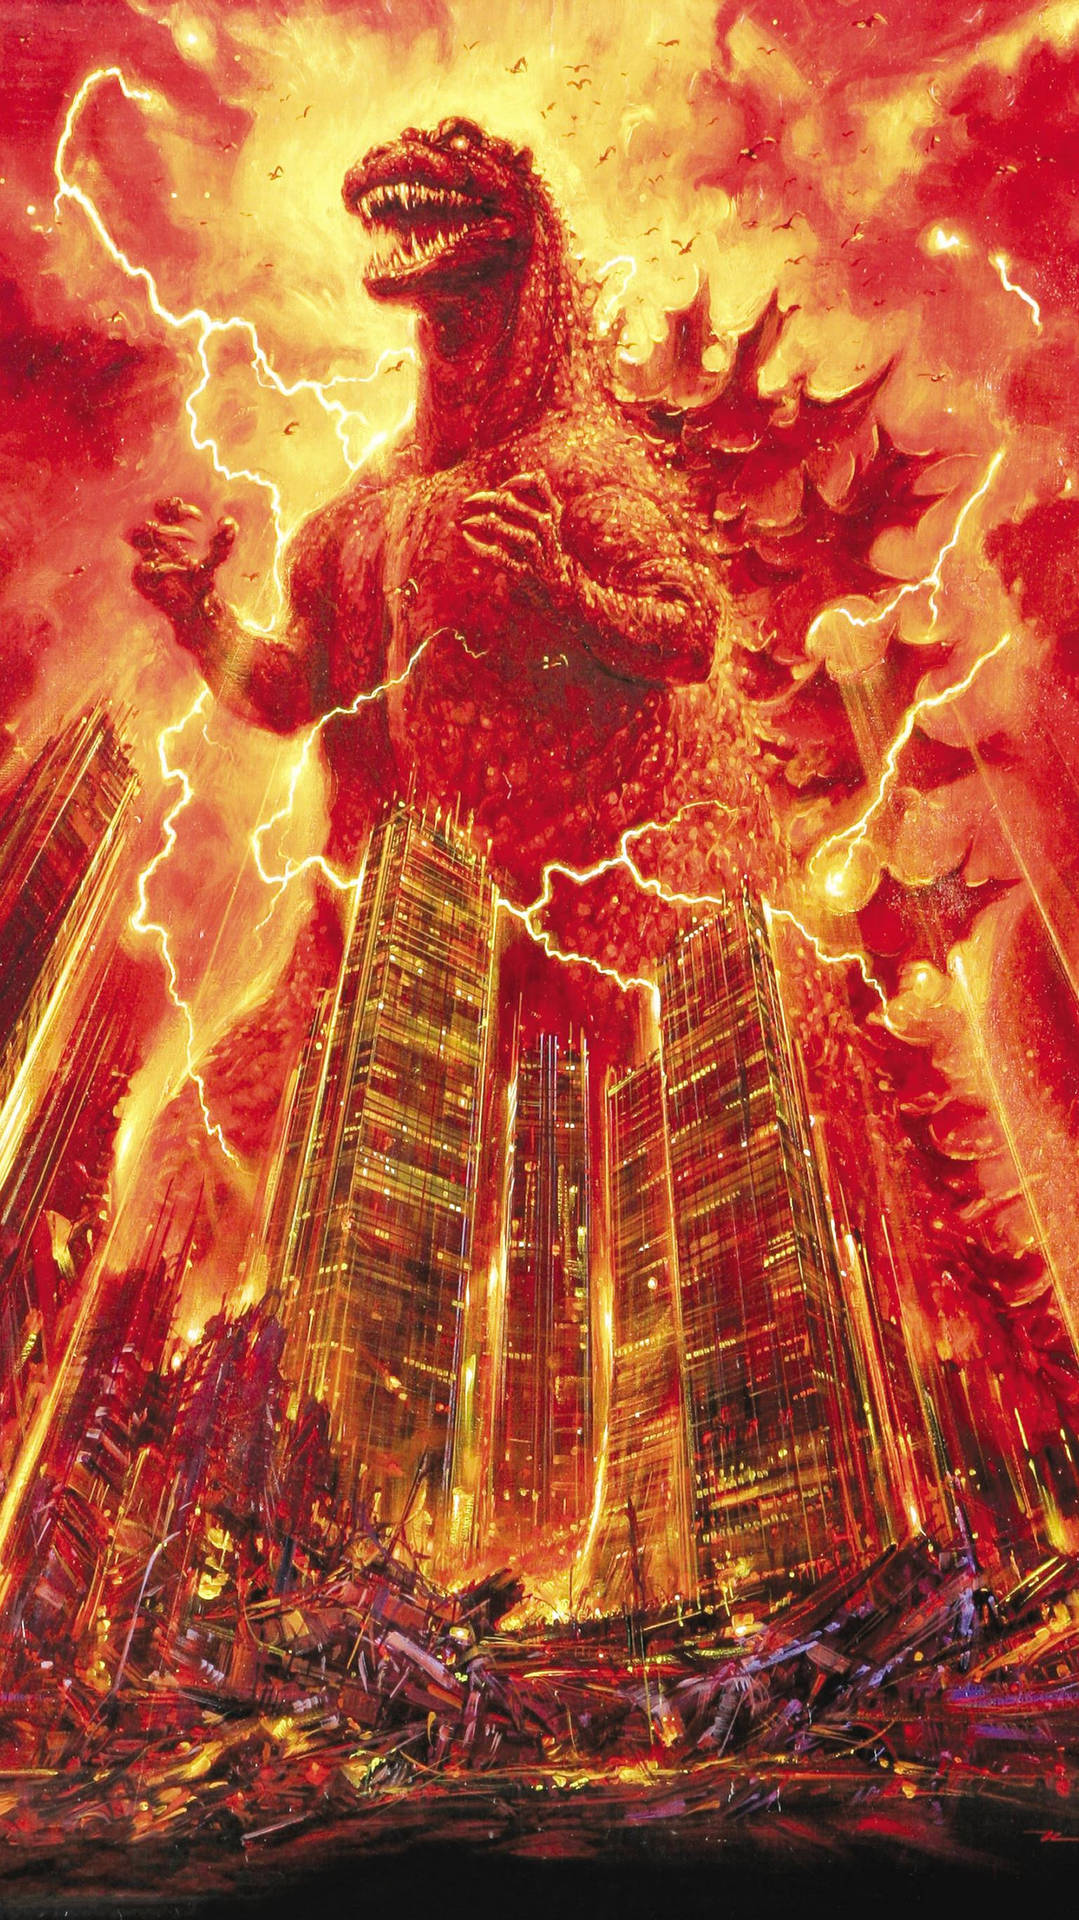 Aufsteigendaus Den Tiefen - Shin Godzilla Wallpaper